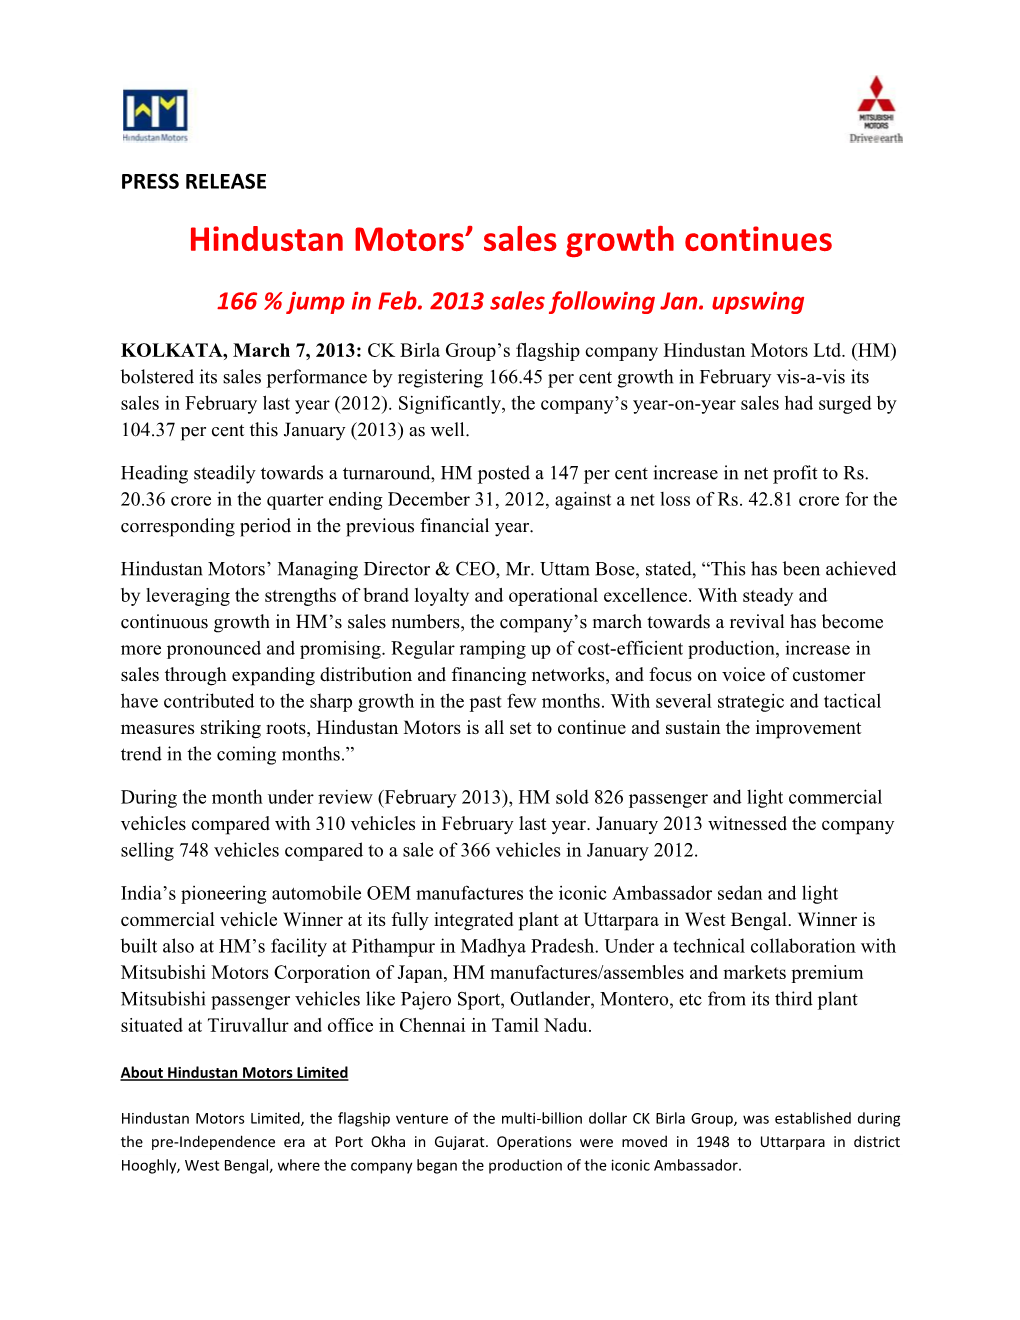 Hindustan Motors' Sales Growth Continues, Kolkata, March 07